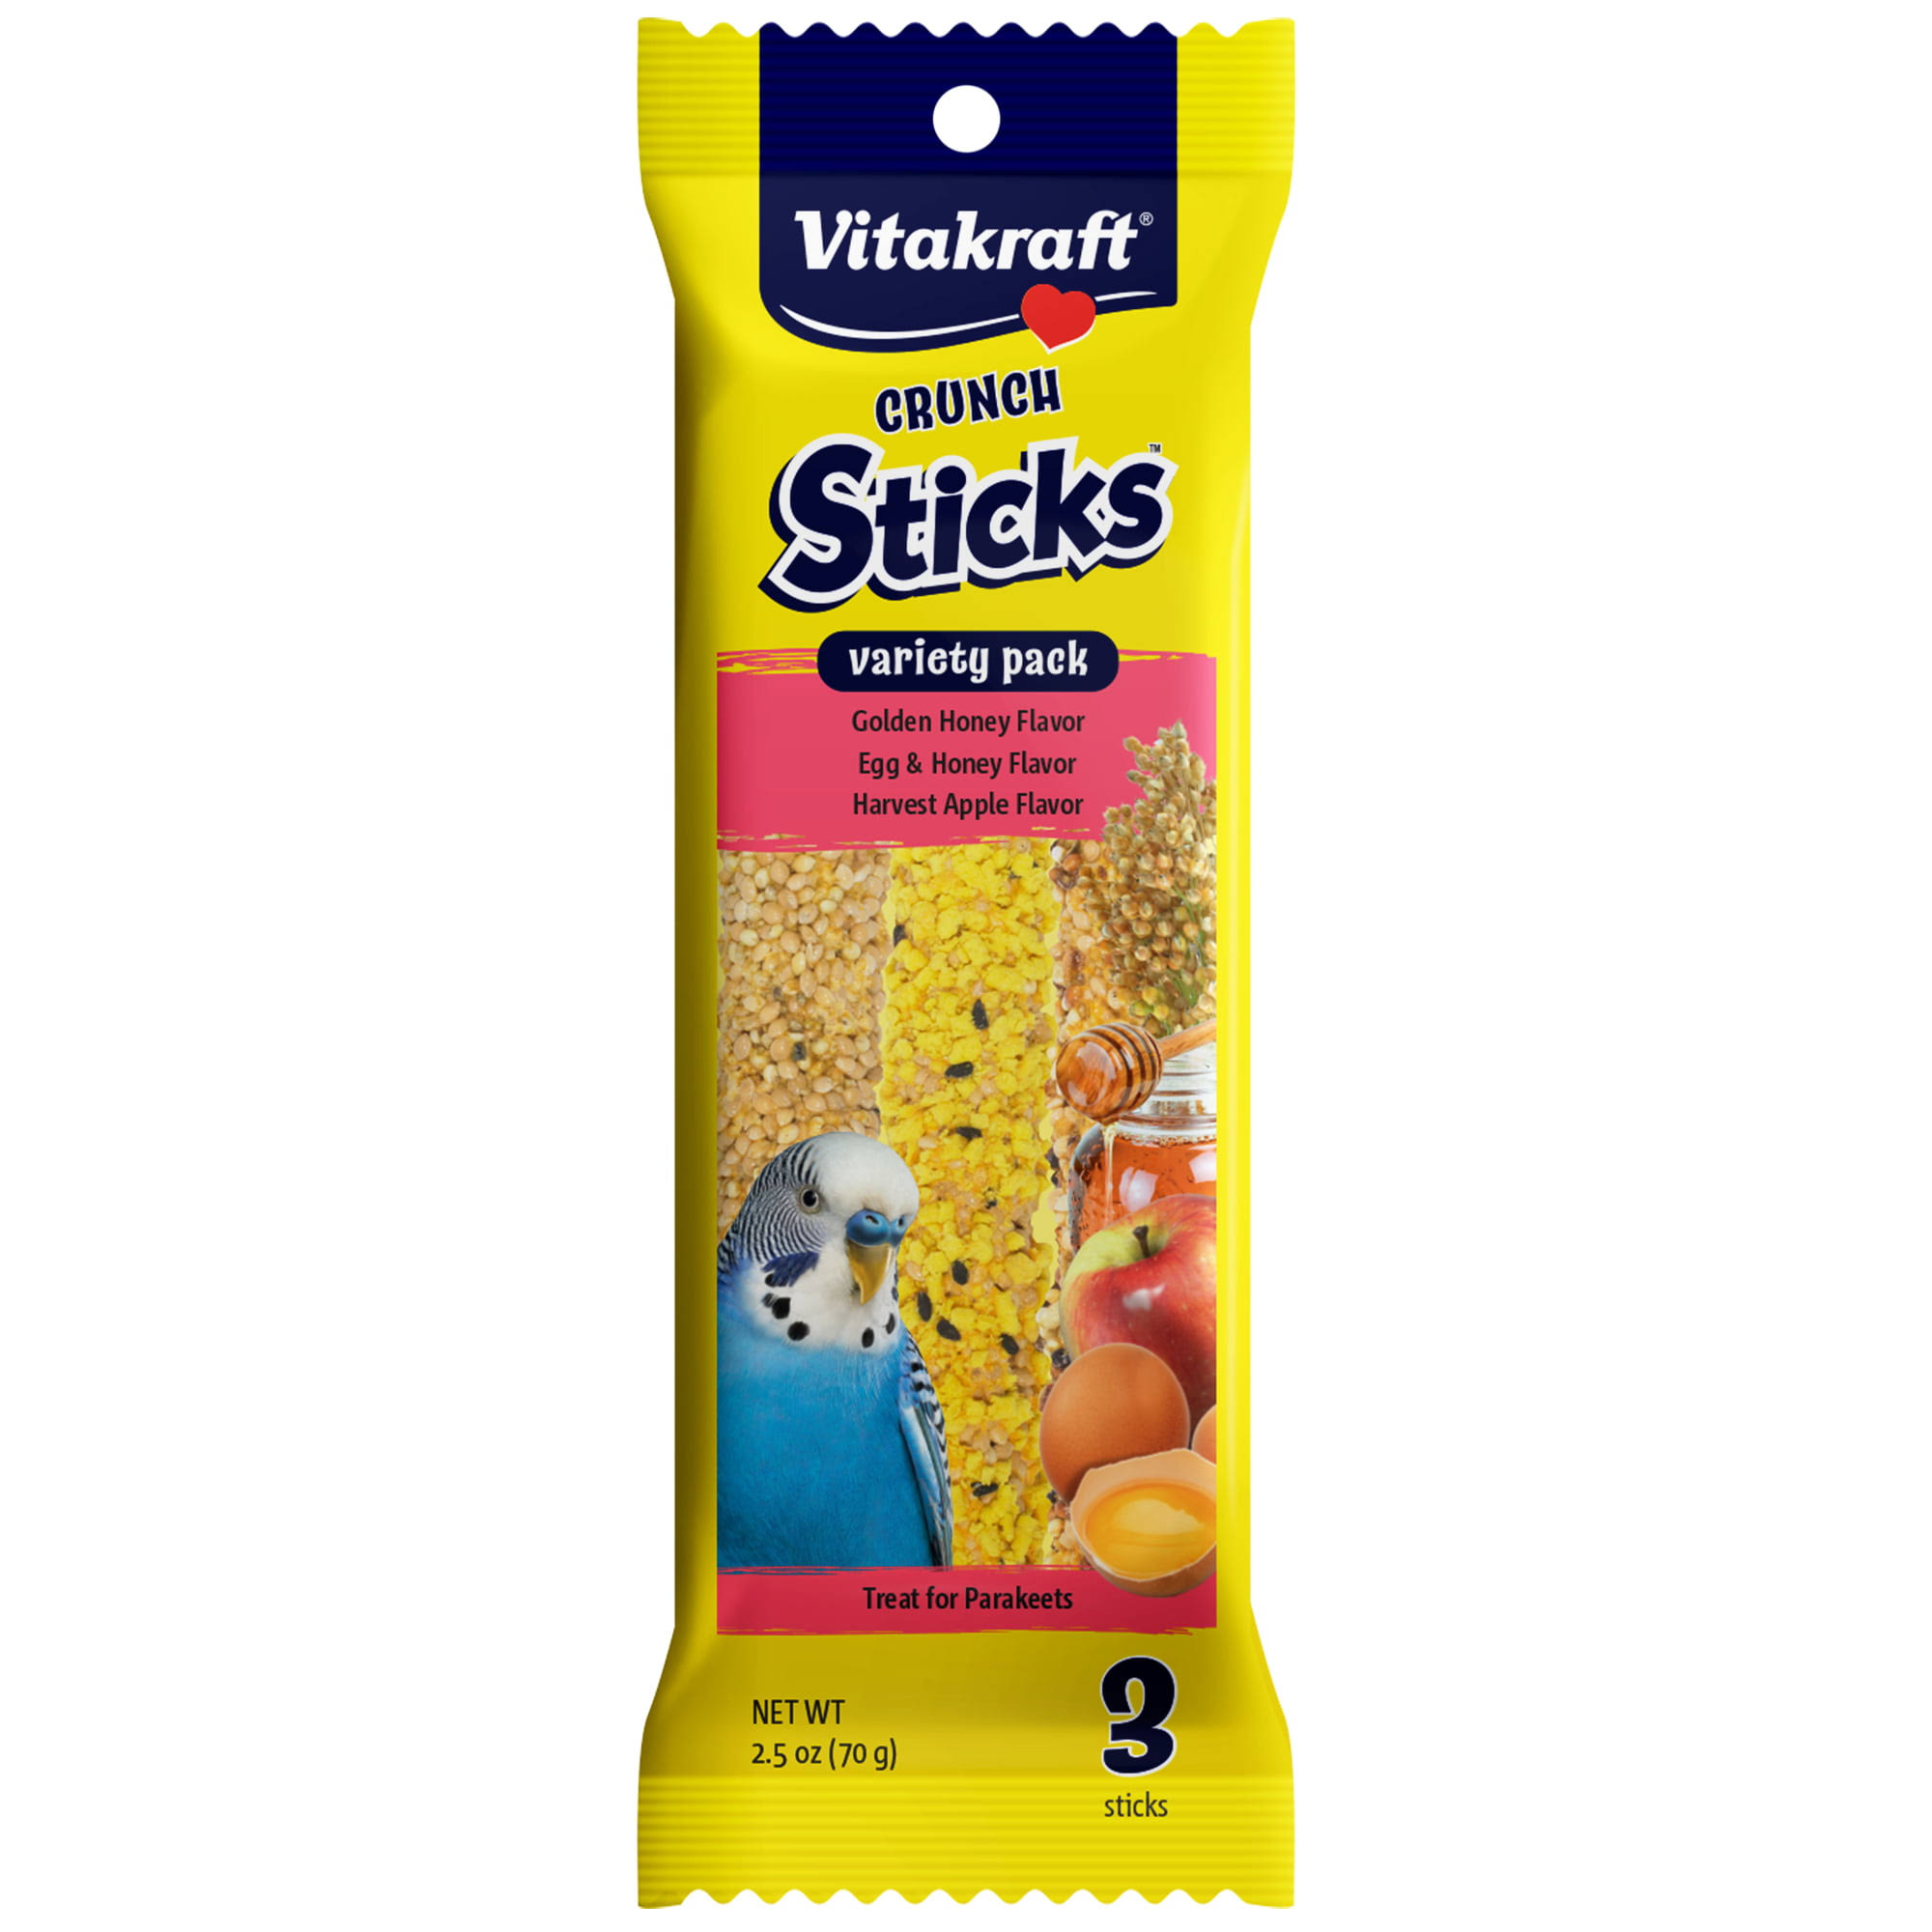 Vitakraft Crunch Sticks Variety Pack For Parakeets 3 PK